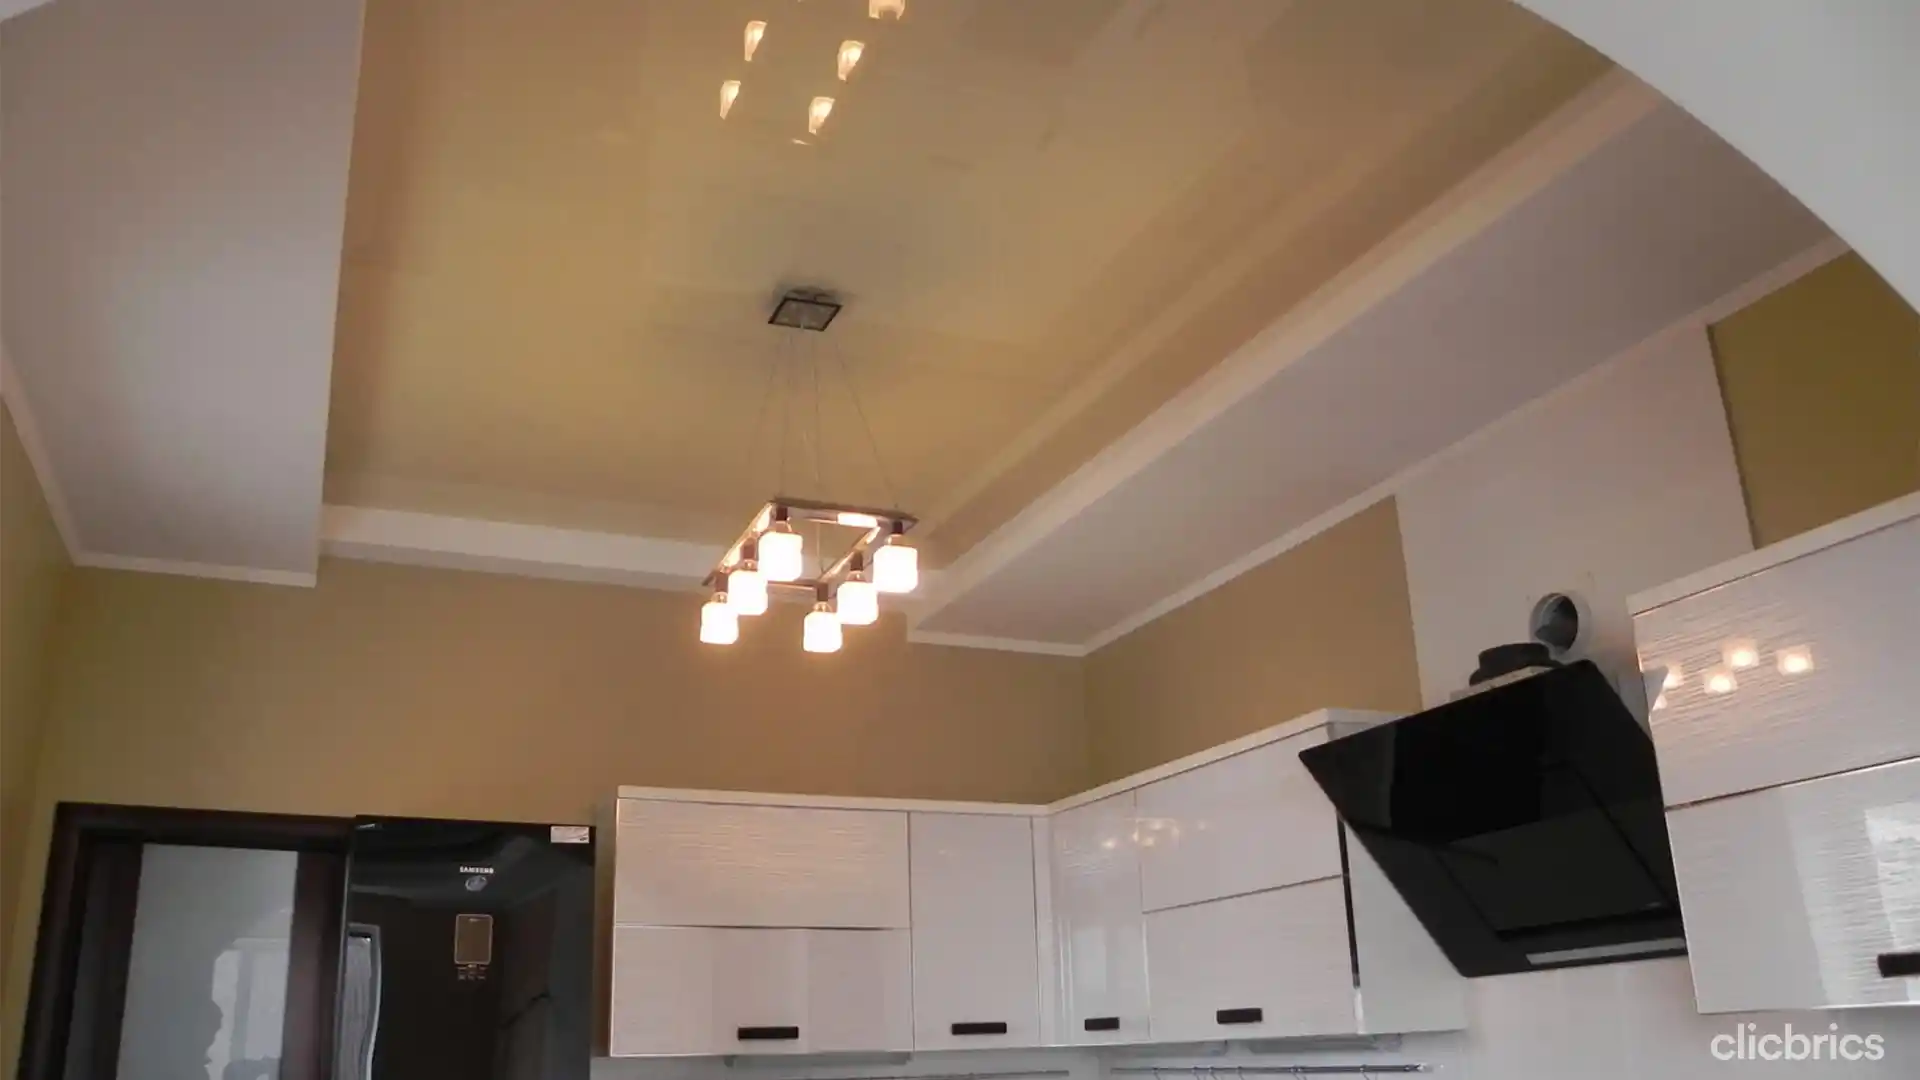 False ceiling design for kitchen